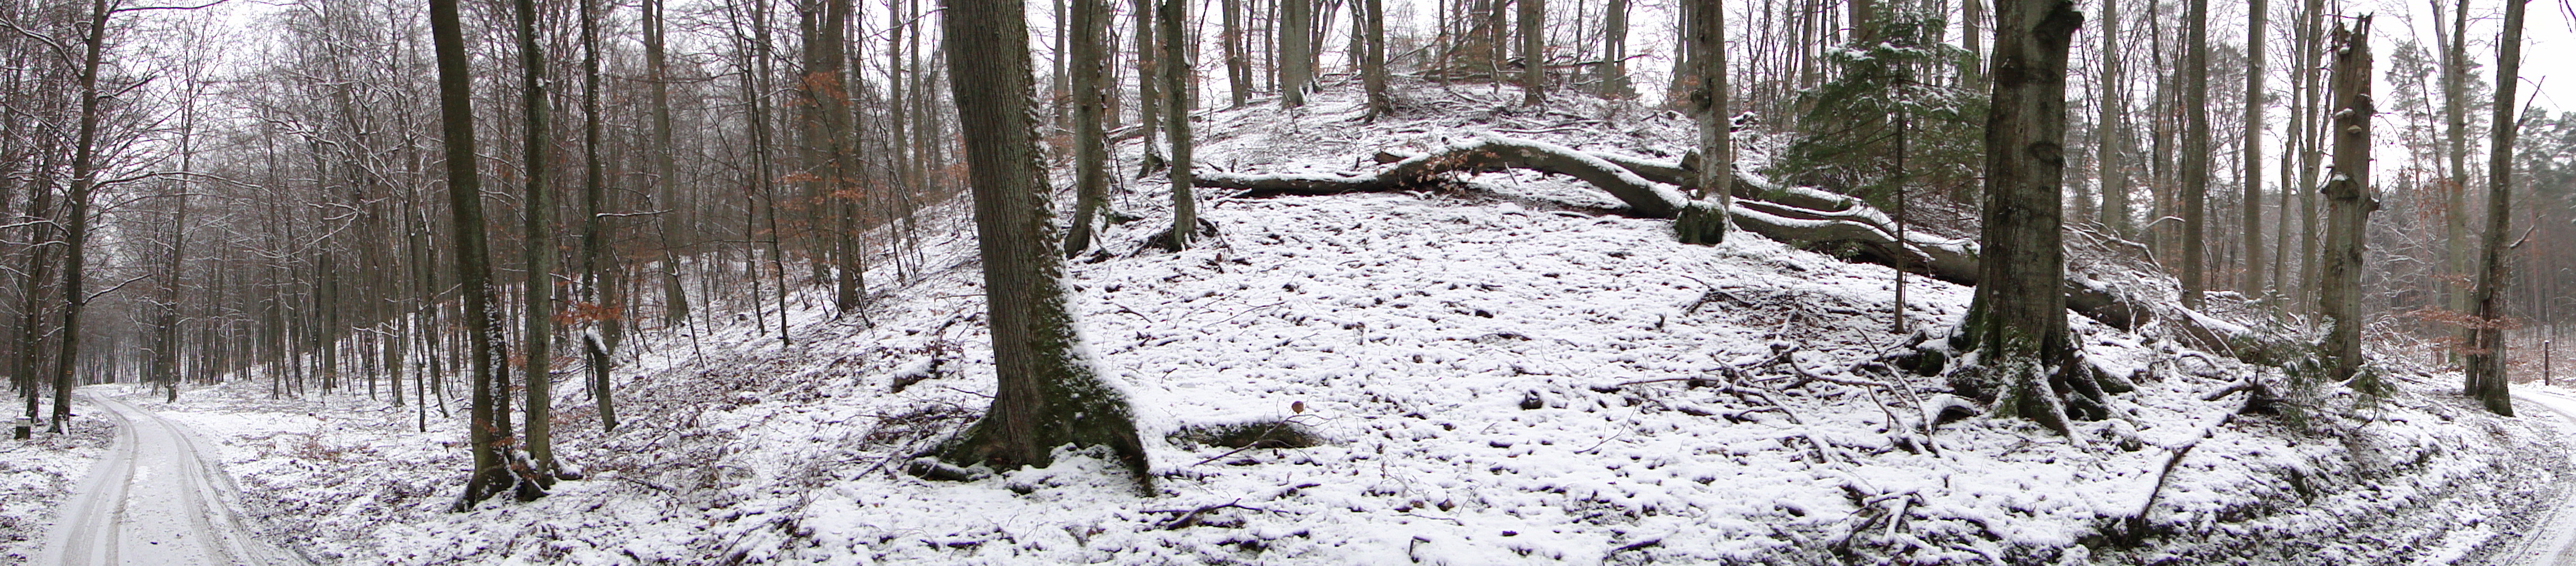 zimowy krajobraz (fot. Dariusz Ożarowski)